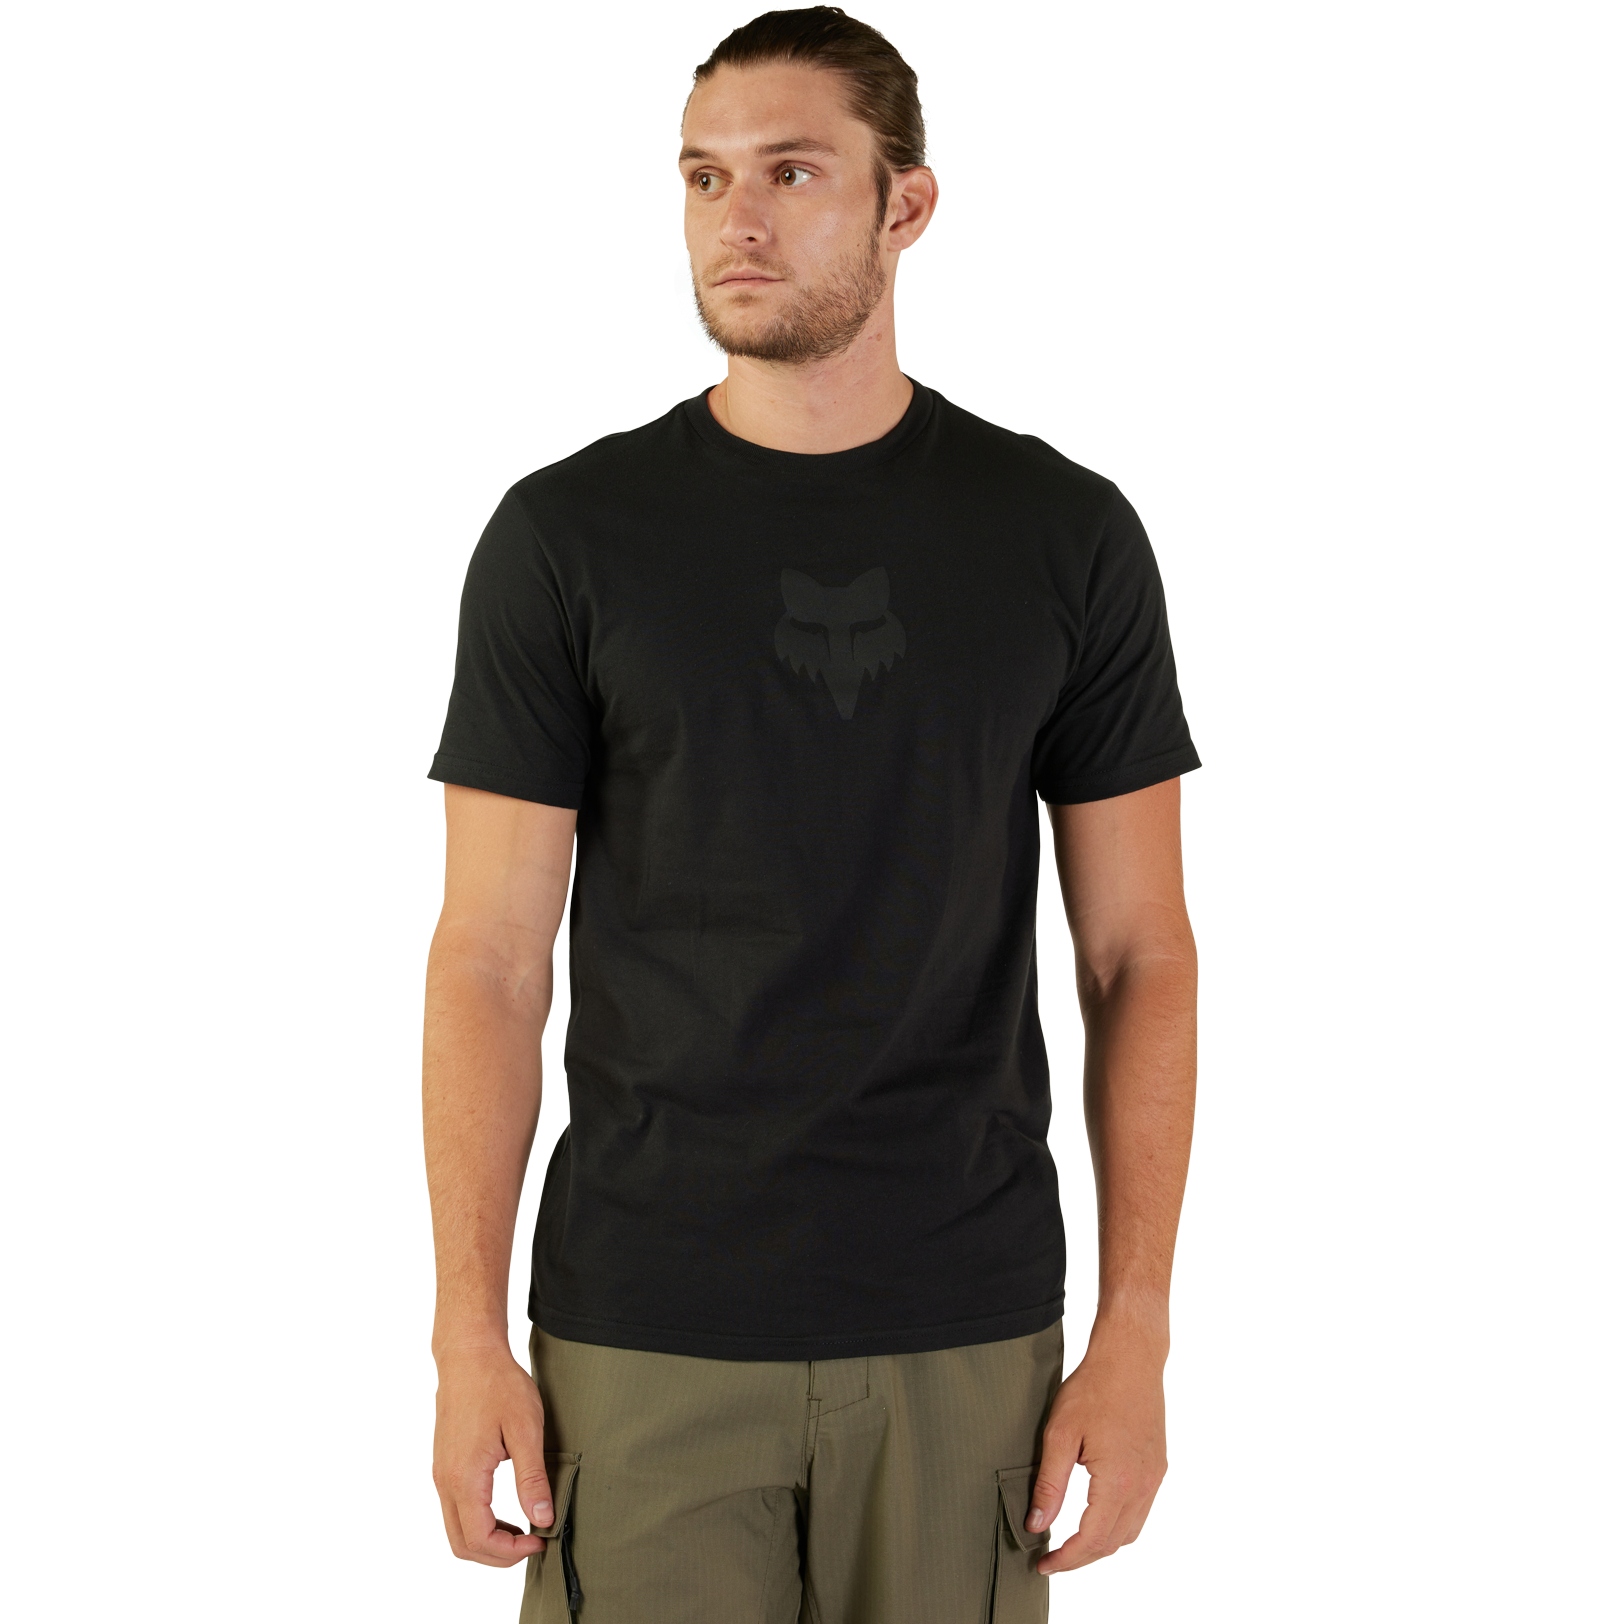 Produktbild von FOX Head Premium T-Shirt Herren - schwarz/schwarz